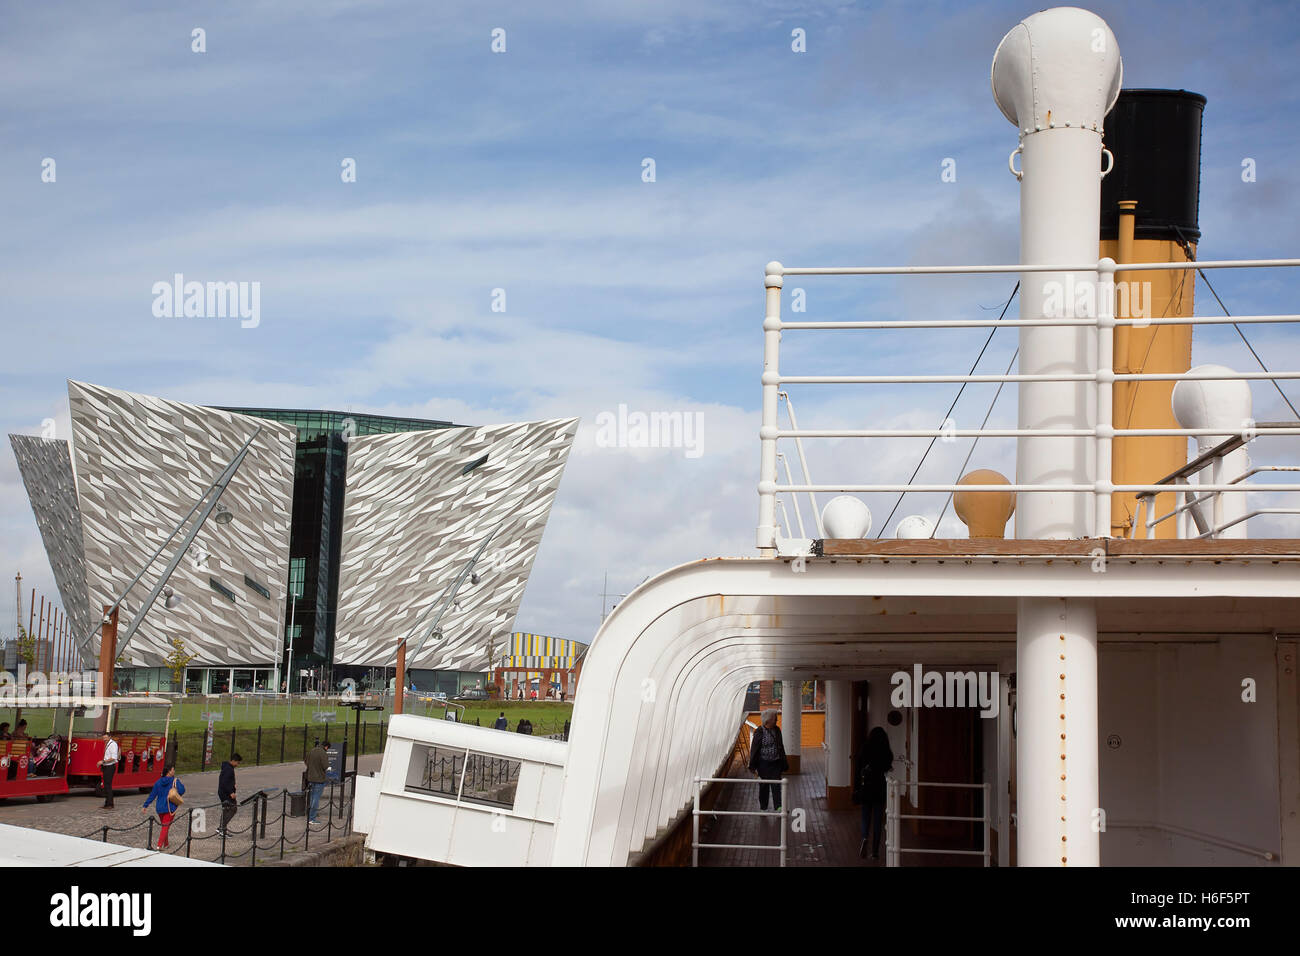 Irland, Norden, Belfast, Titanic Viertel-Besucherattraktion von SS Nomadic zart gesehen. Stockfoto